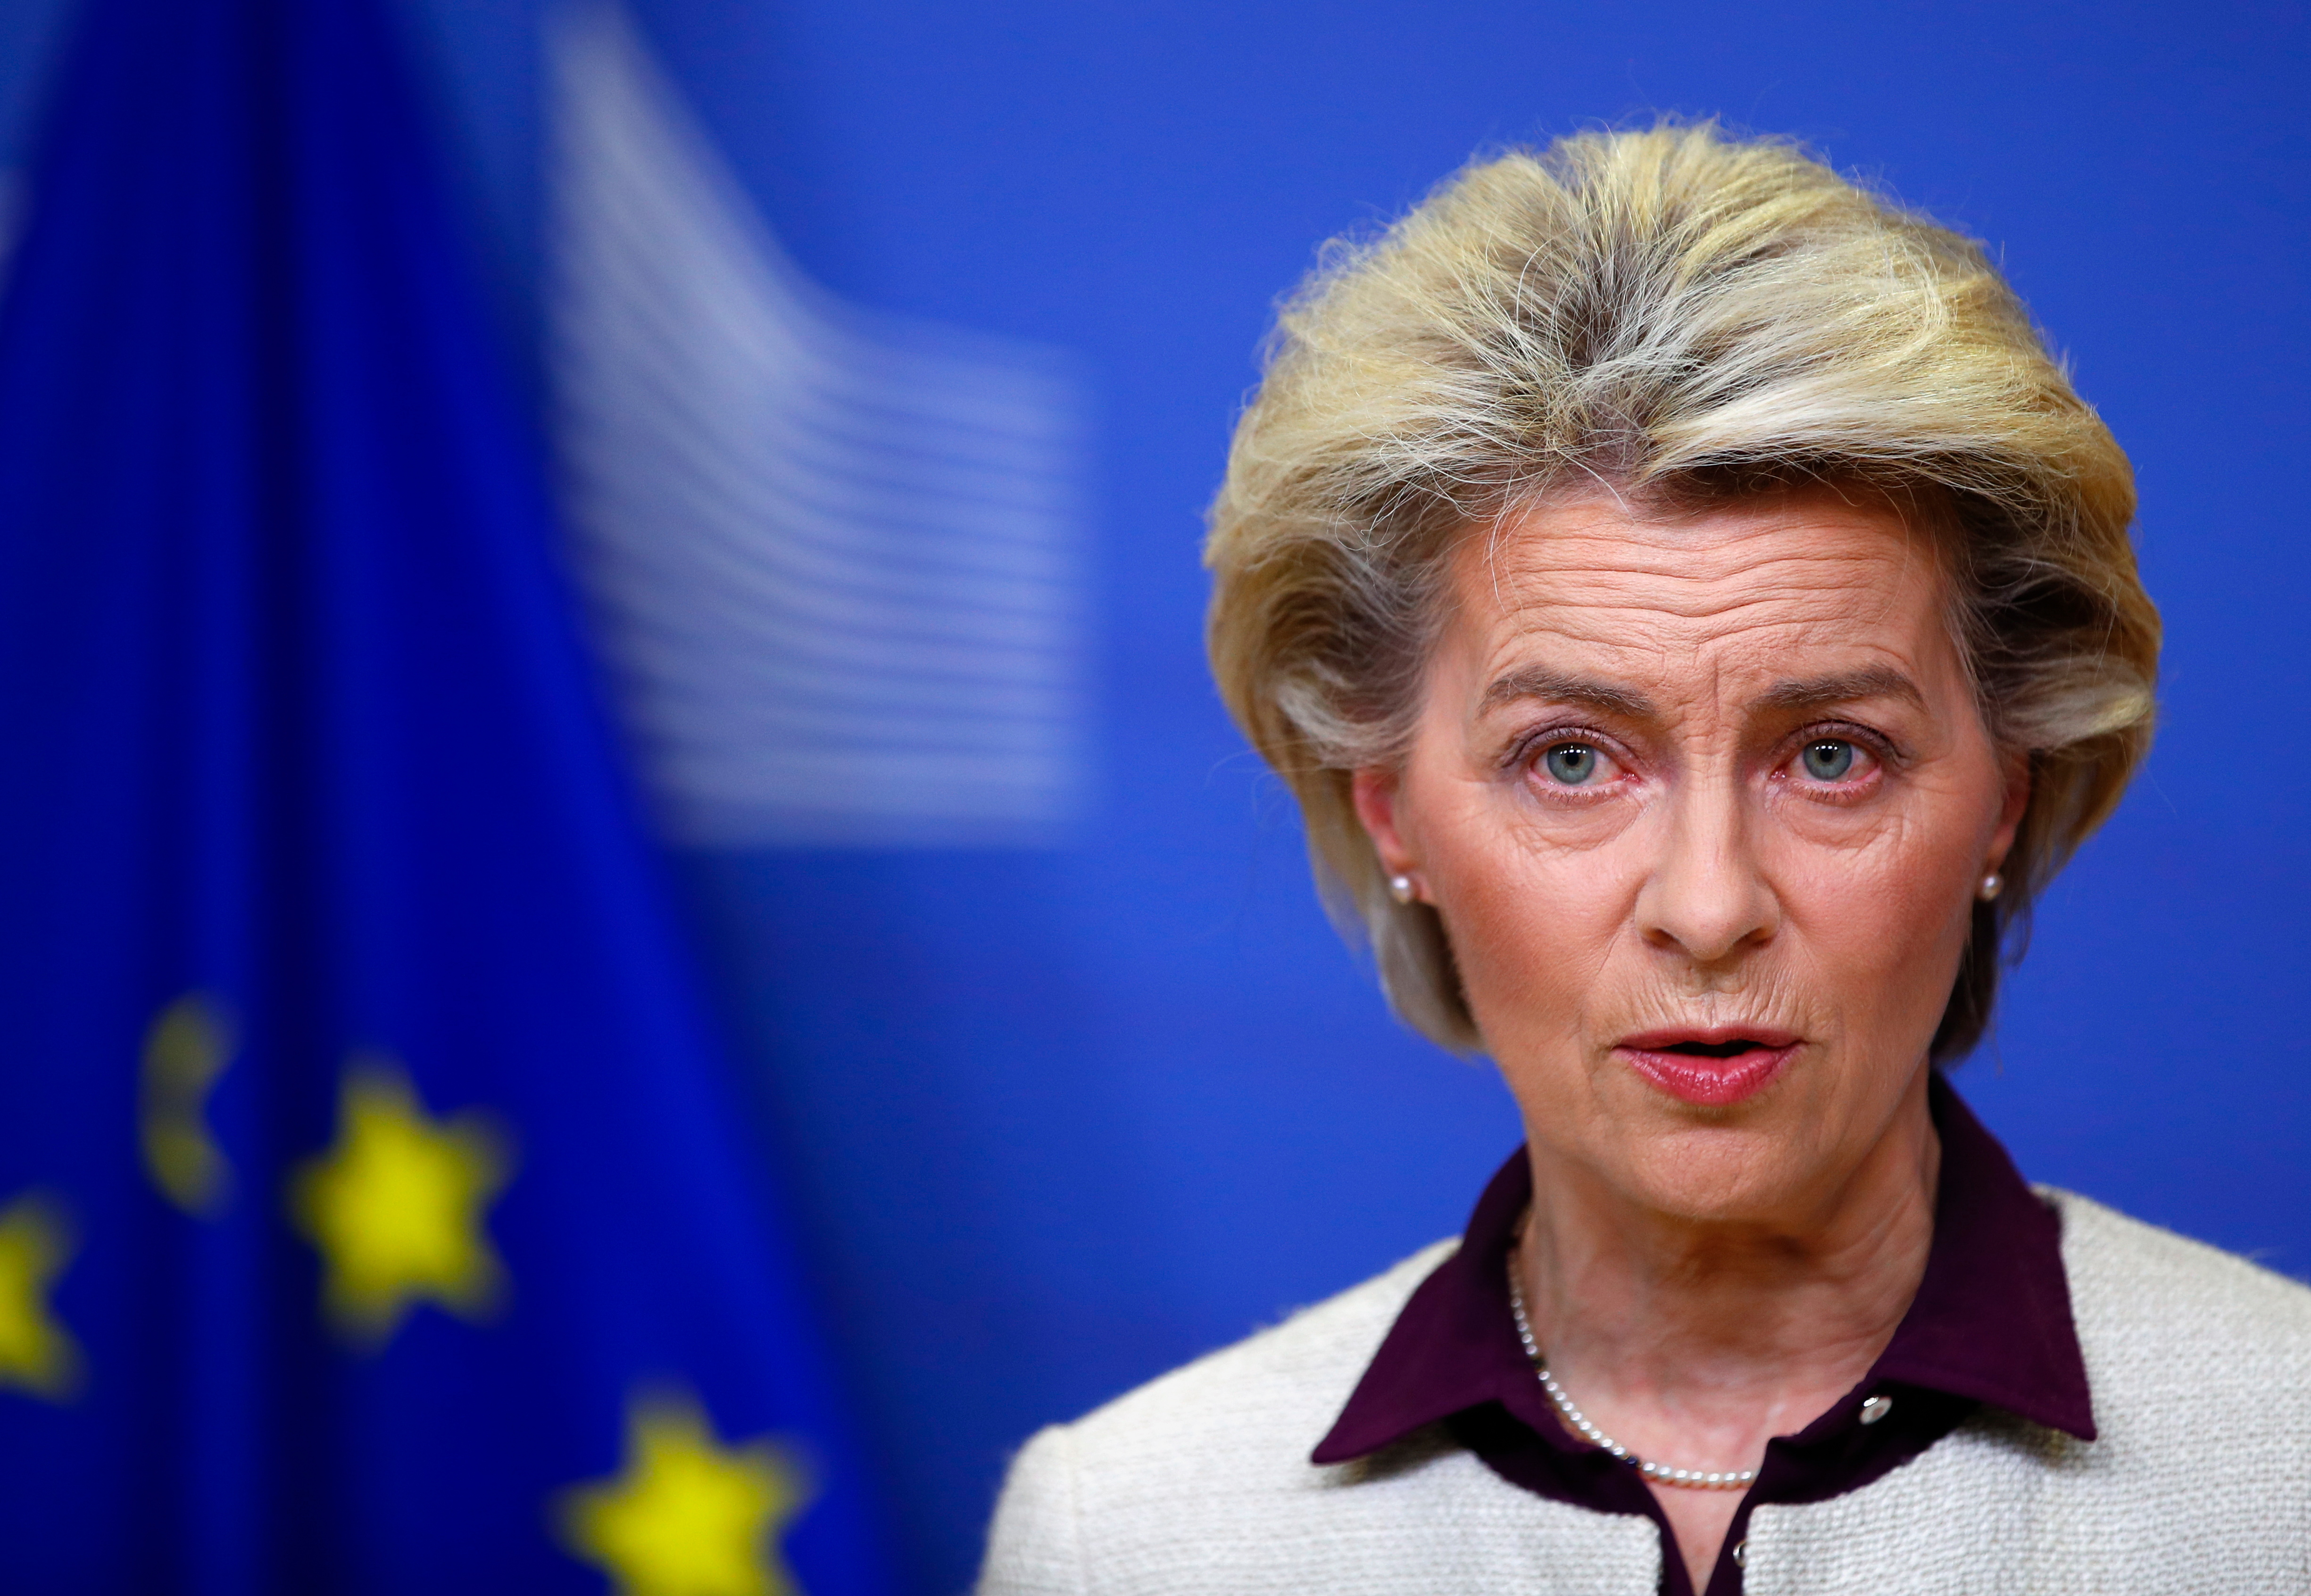 La presidenta de la Comisión Europea, Ursula von der Leyen, en una imagen de archivo. (EFE/EPA/JOHANNA GERON)
